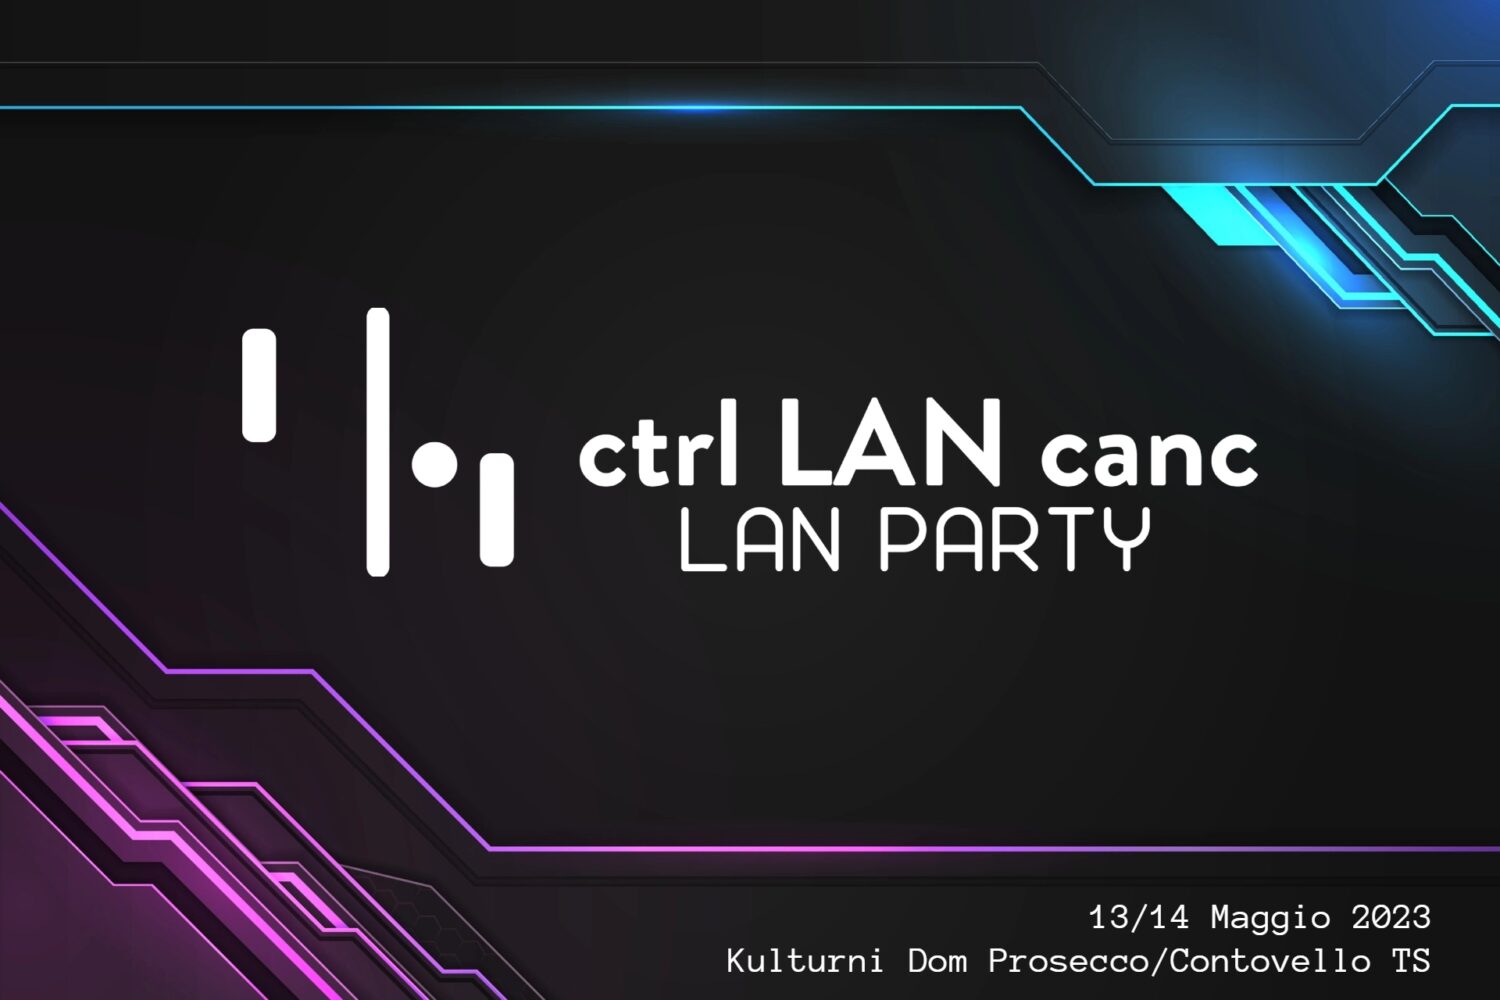 Ctrl LAN canc